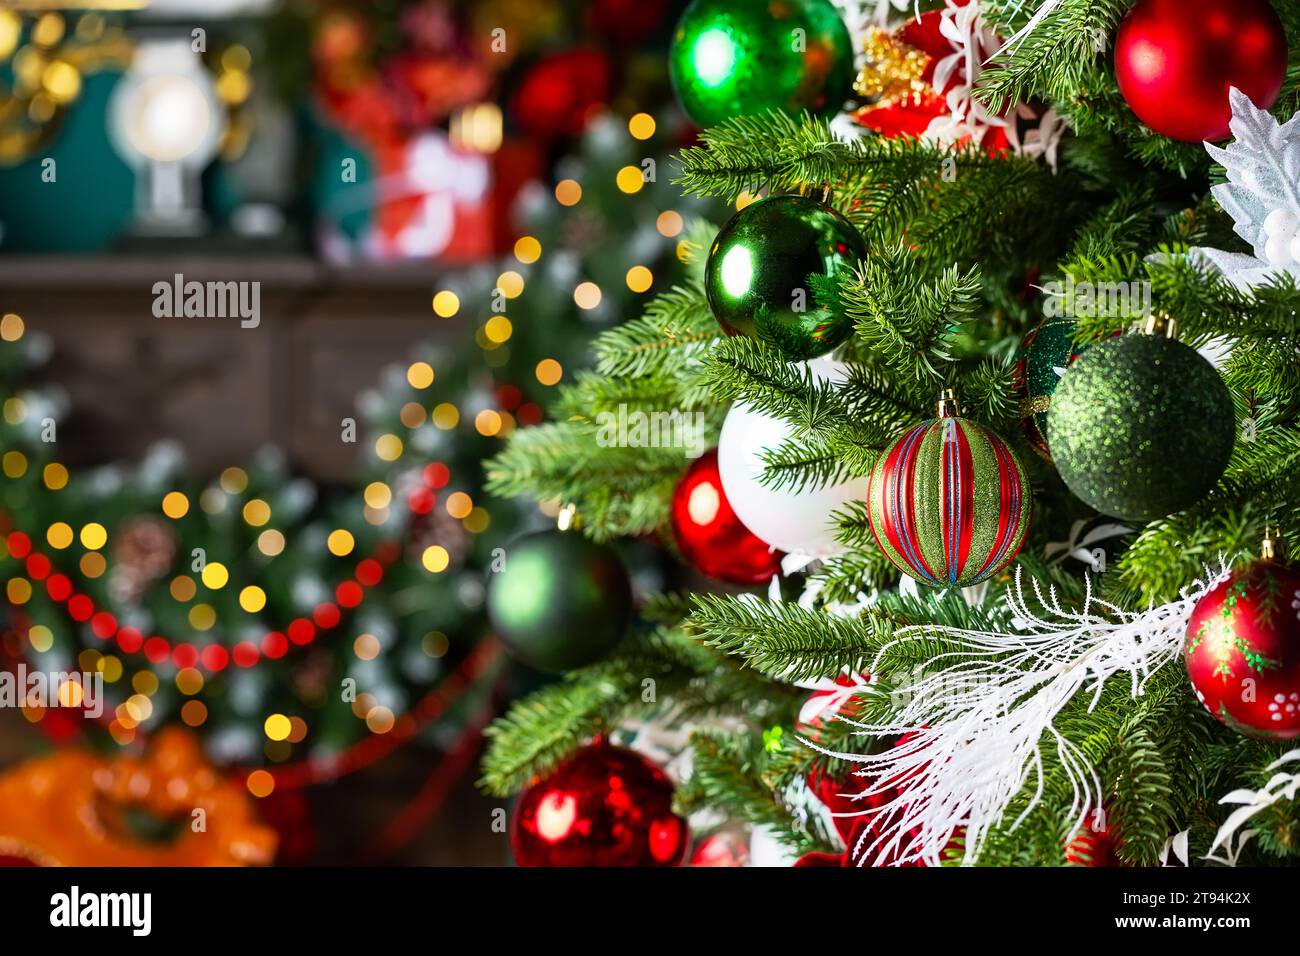 Joyeux Noël et joyeux fond de vacances du nouvel an. Sapin de Noël et décorations de vacances à la maison de Noël avec boules et lumière de bokeh. Banque D'Images